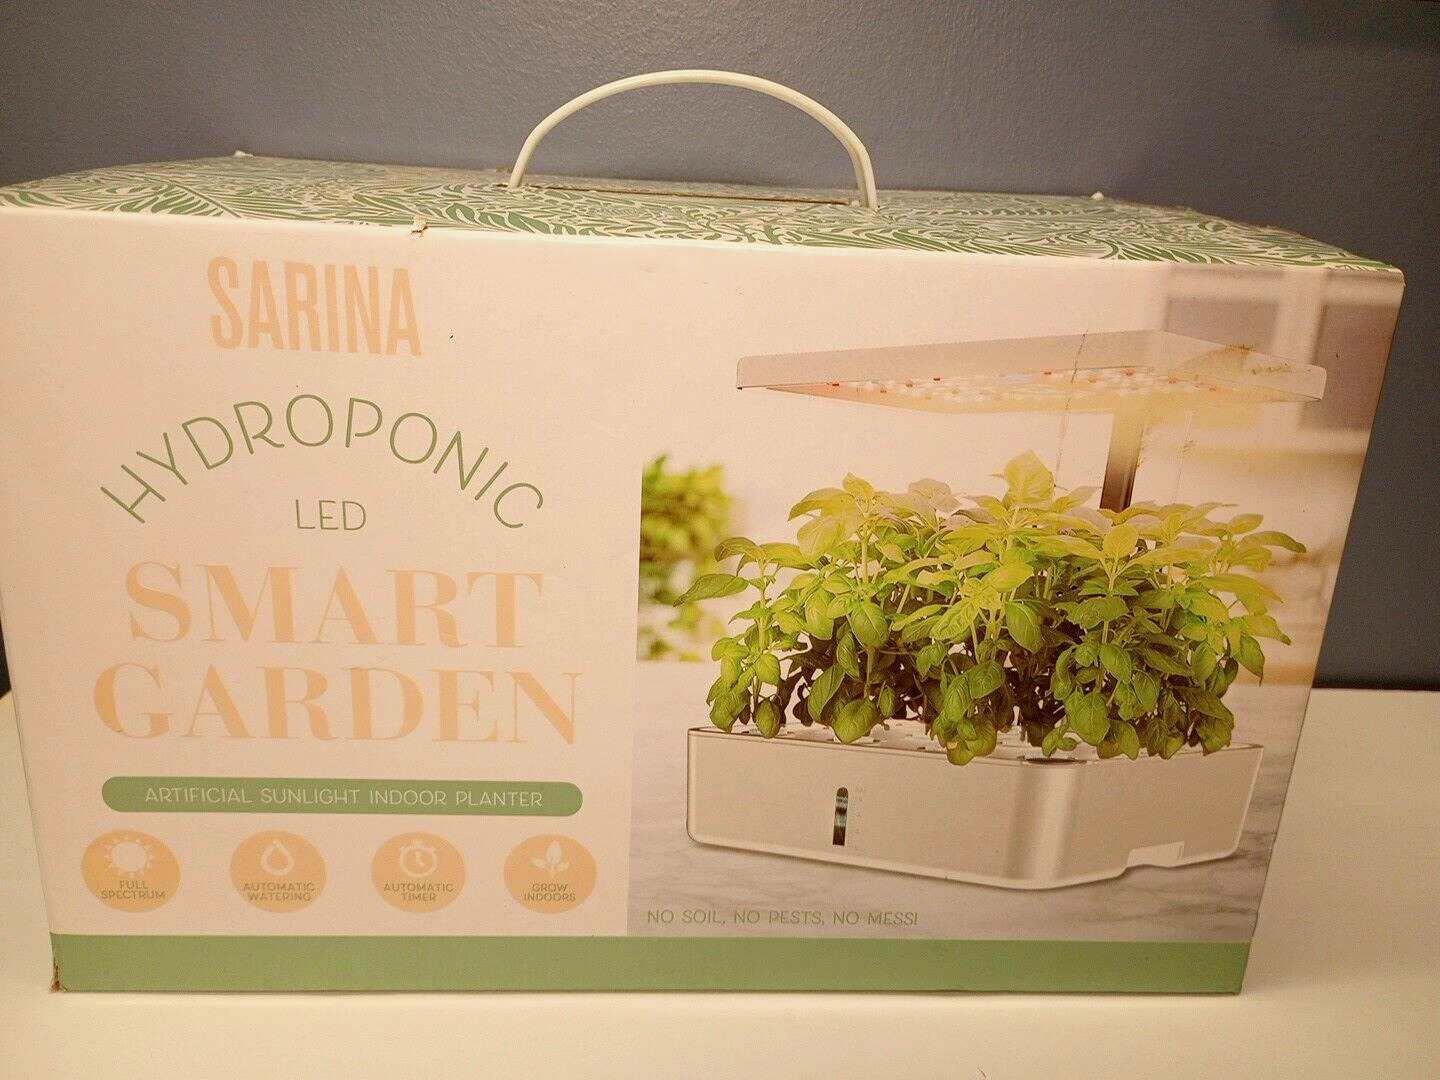 Sarina Smart indoor Garden Hydroponic Growing flowers Herb Kit Light